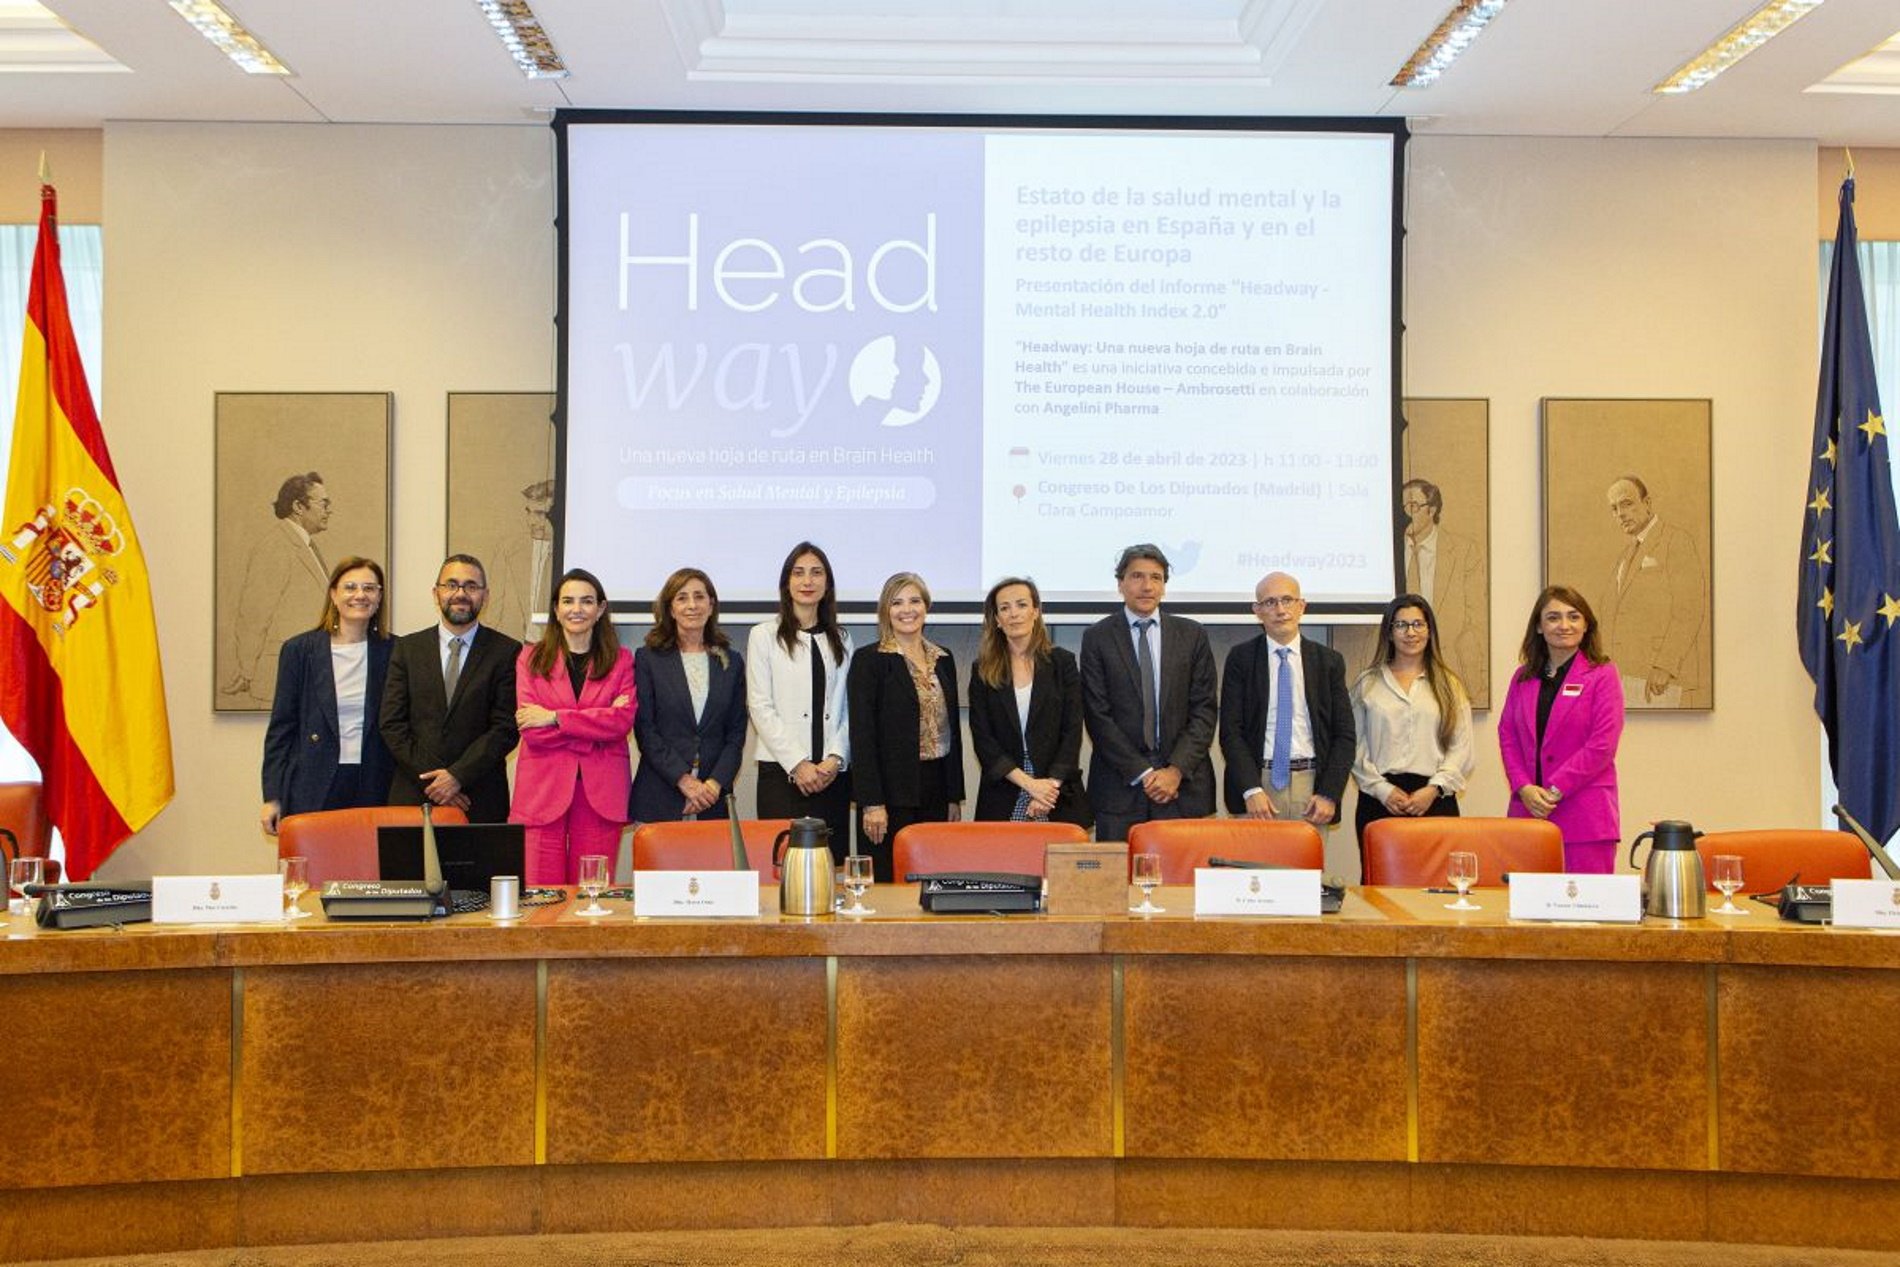 La situación socio-económica perjudica la salud mental de los españoles, según la iniciativa 'Headway'